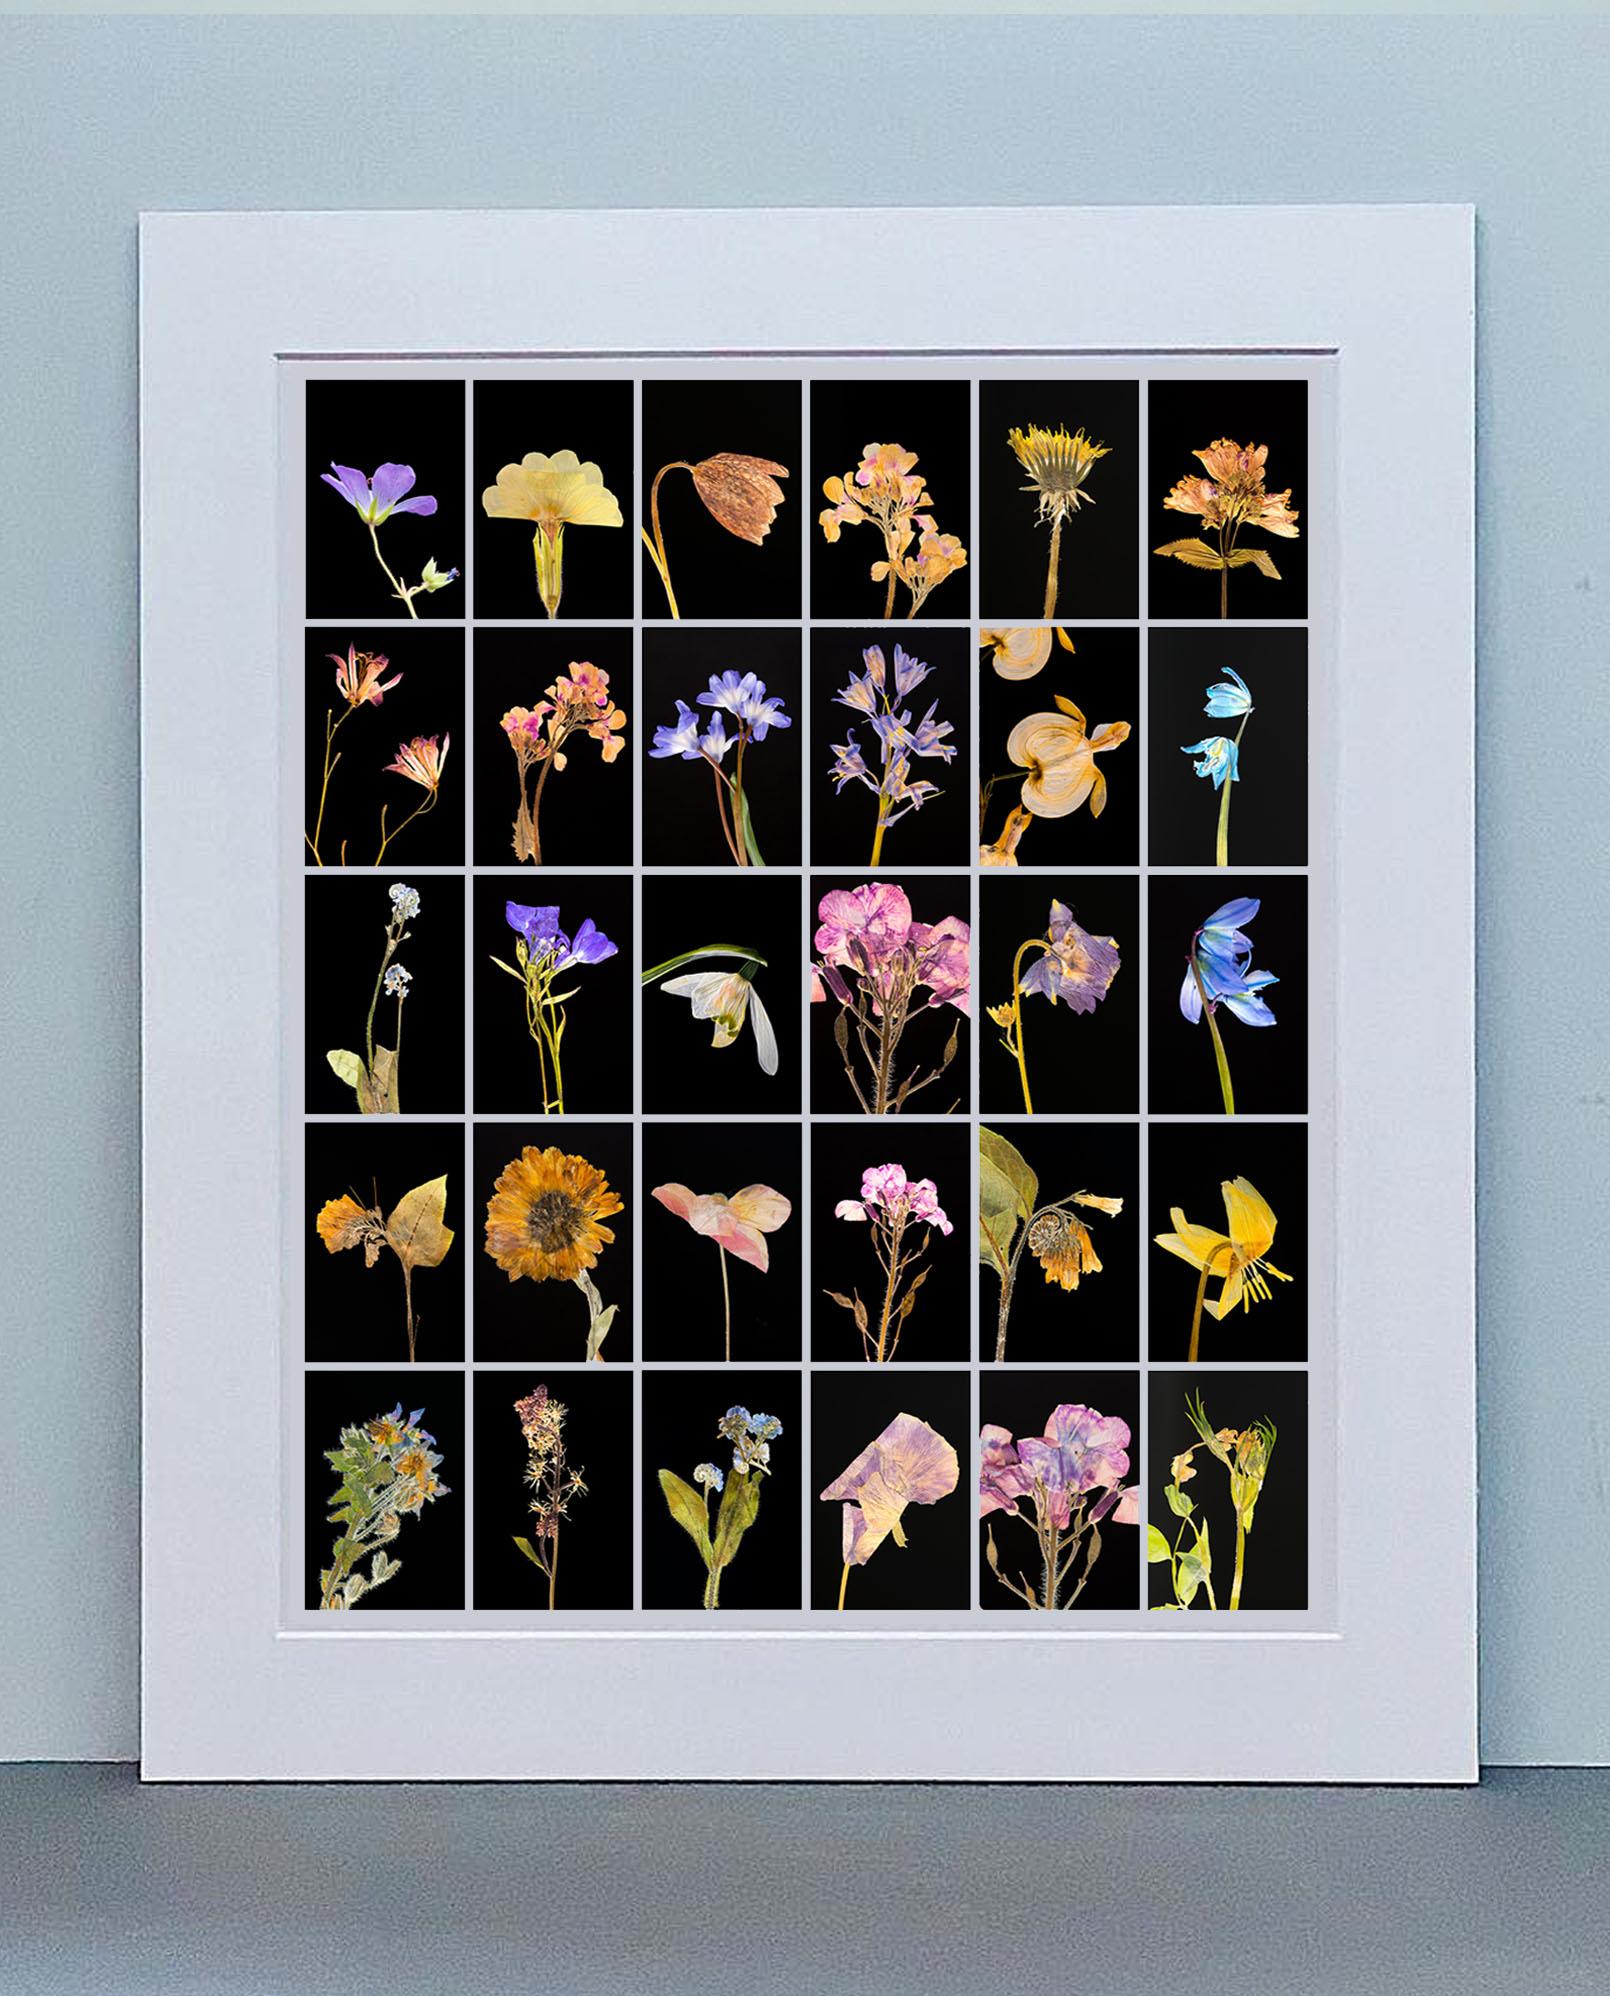 Geranium - Impressions photographiques botaniques couleur - Photograph de Martin Parker